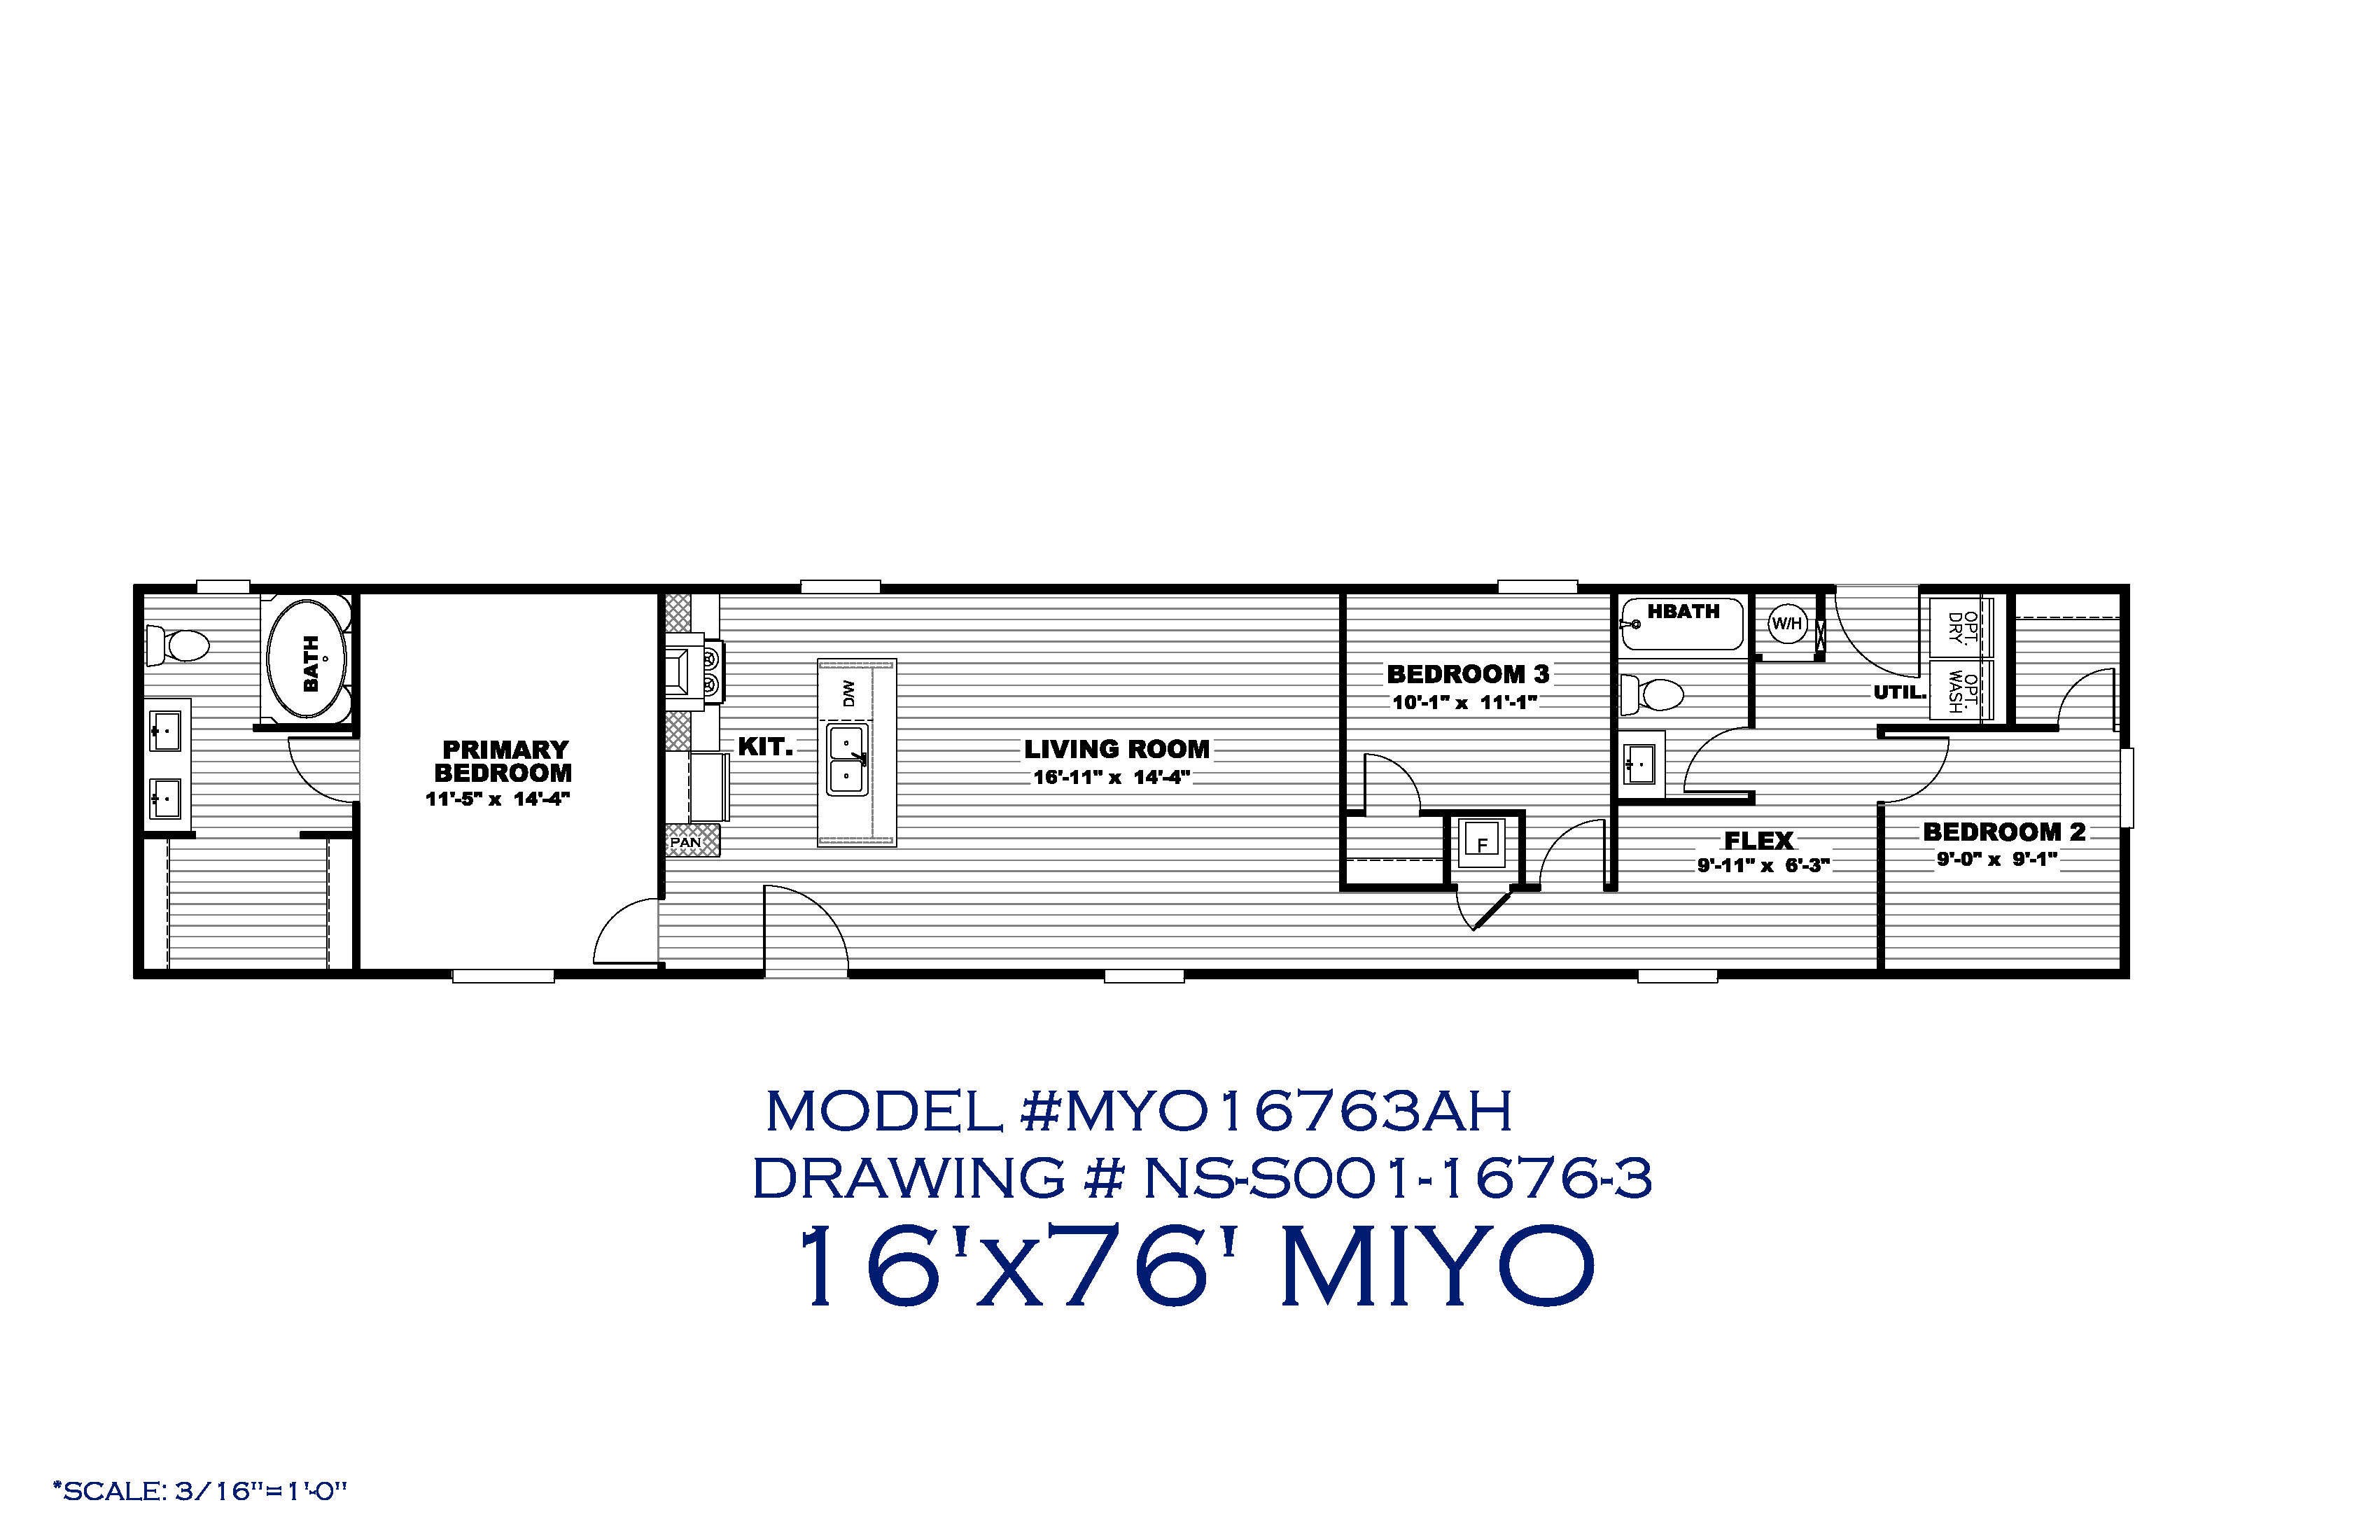 The MIYO 1676 Floorplan